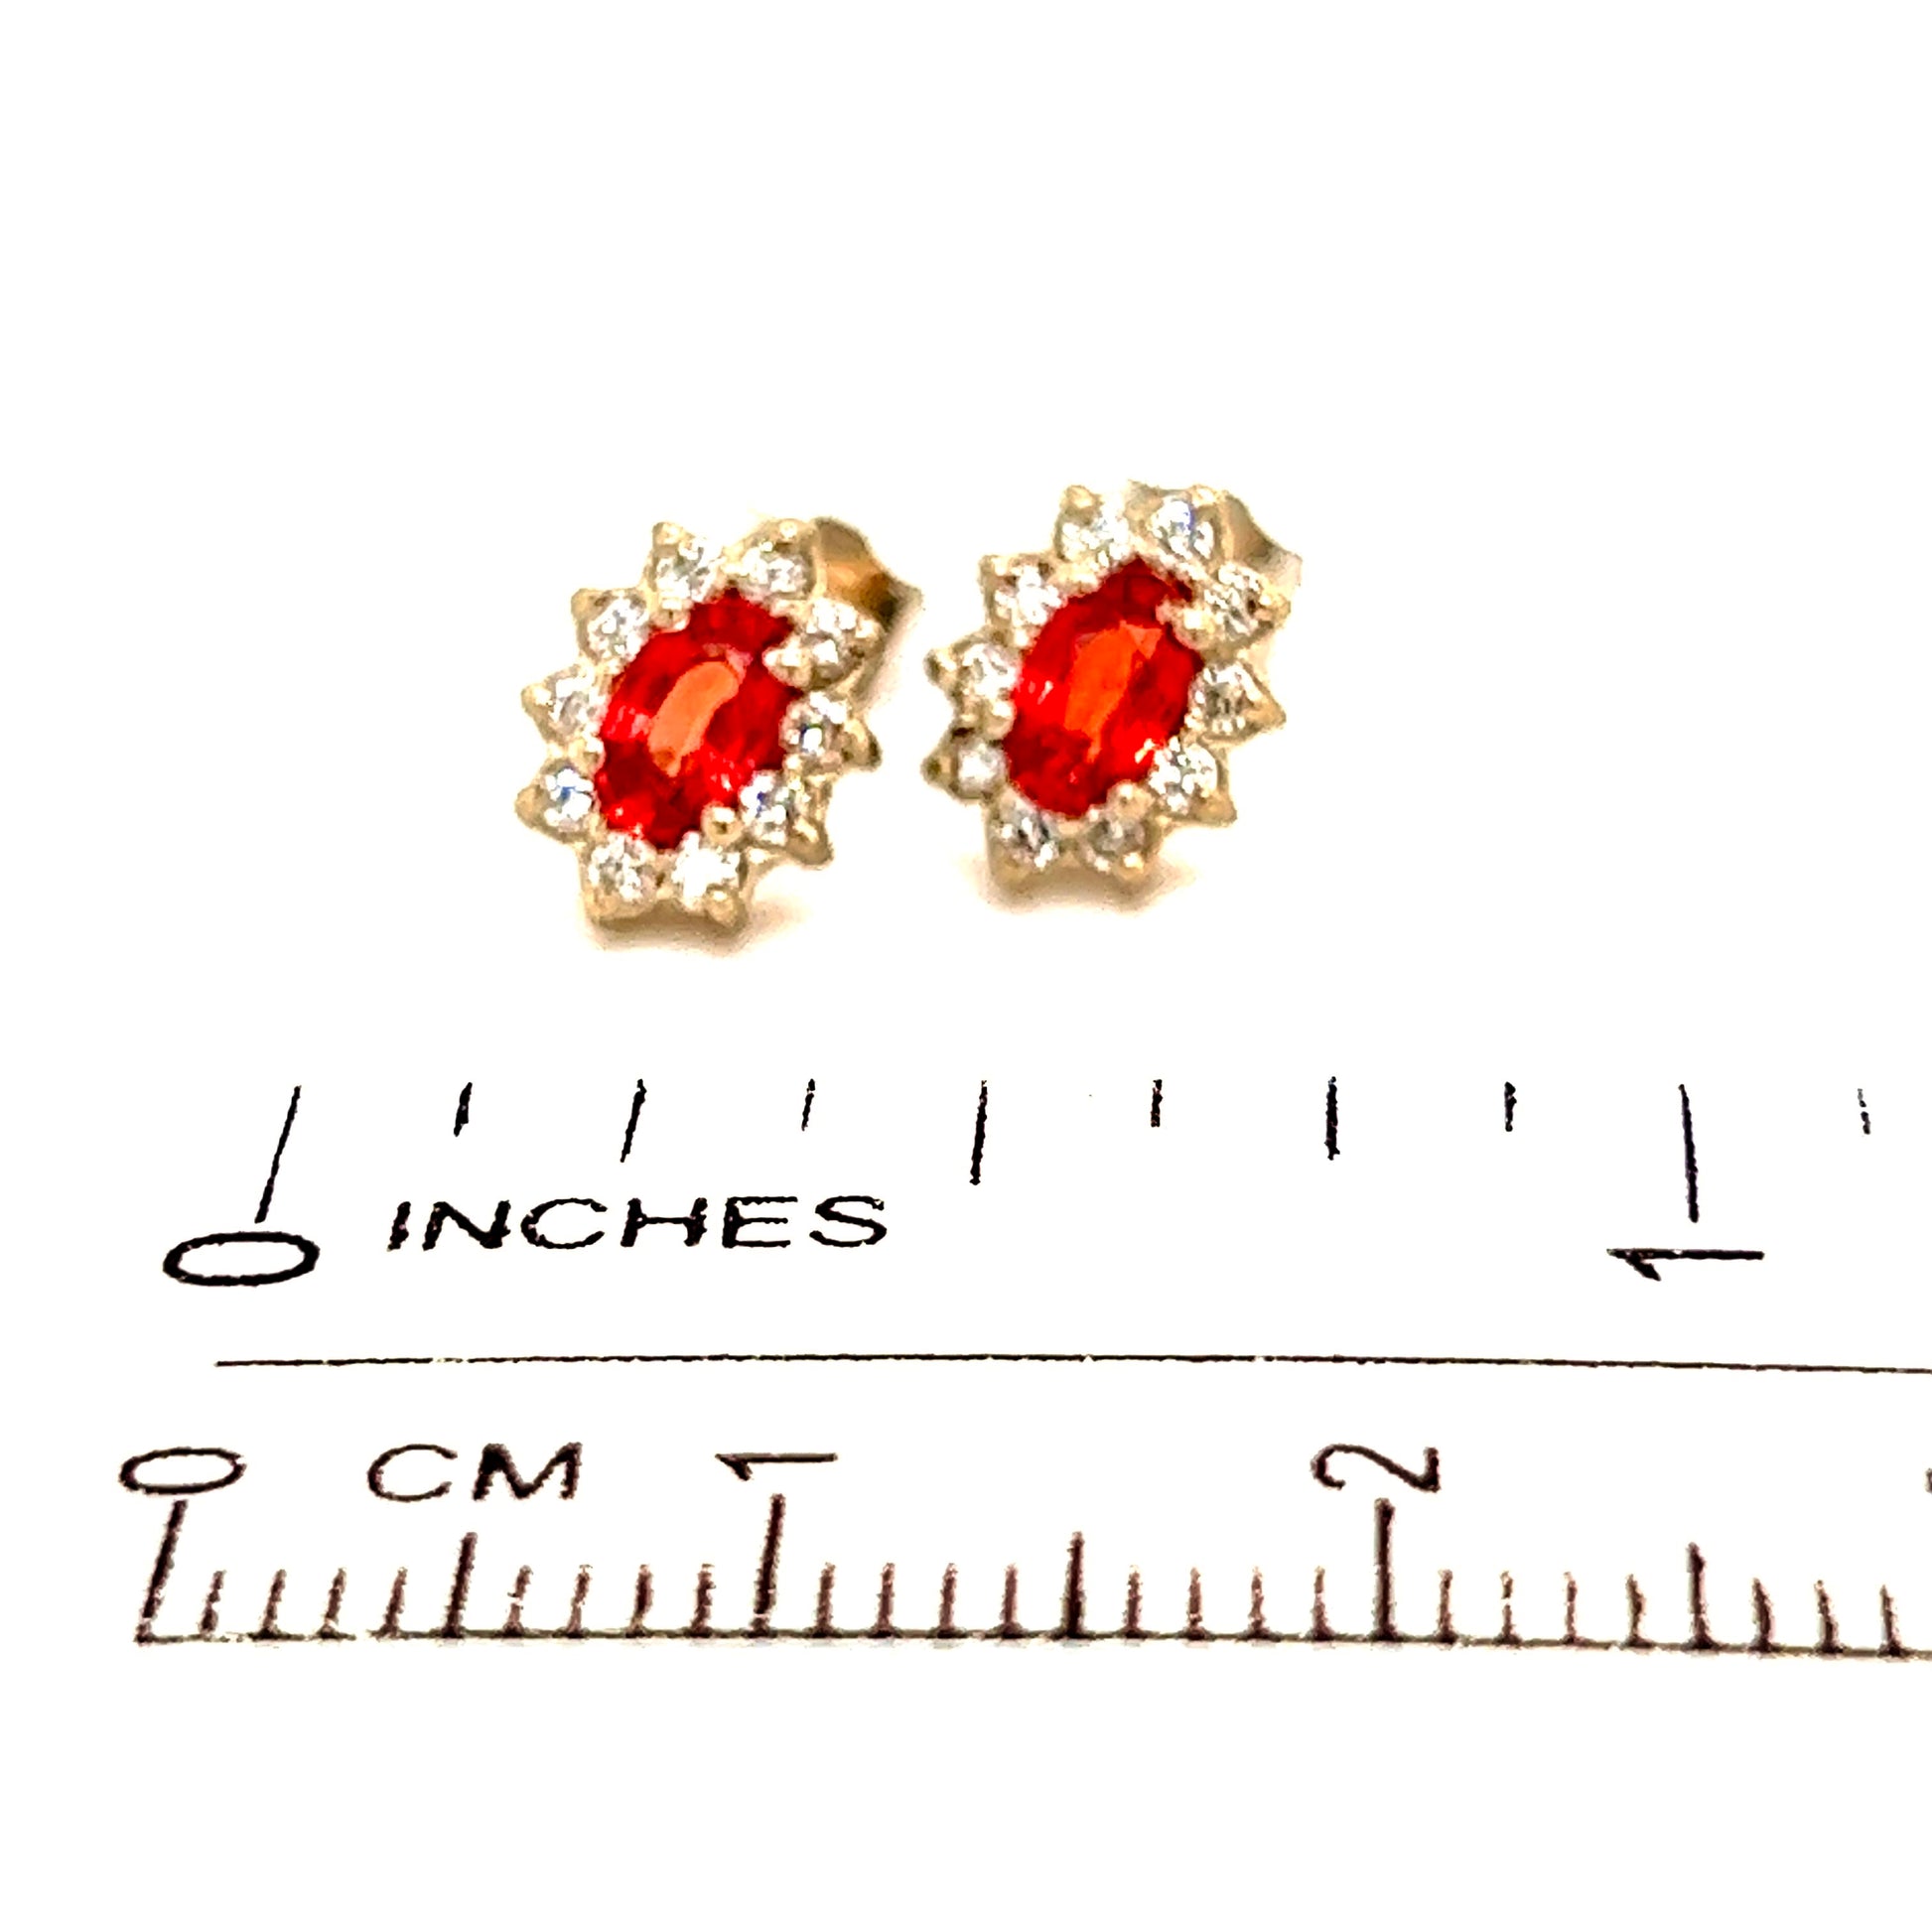 Natural Sapphire Diamond Stud Earrings 14k Gold 0.90 TCW Certified $2,450 215601 - Certified Fine Jewelry